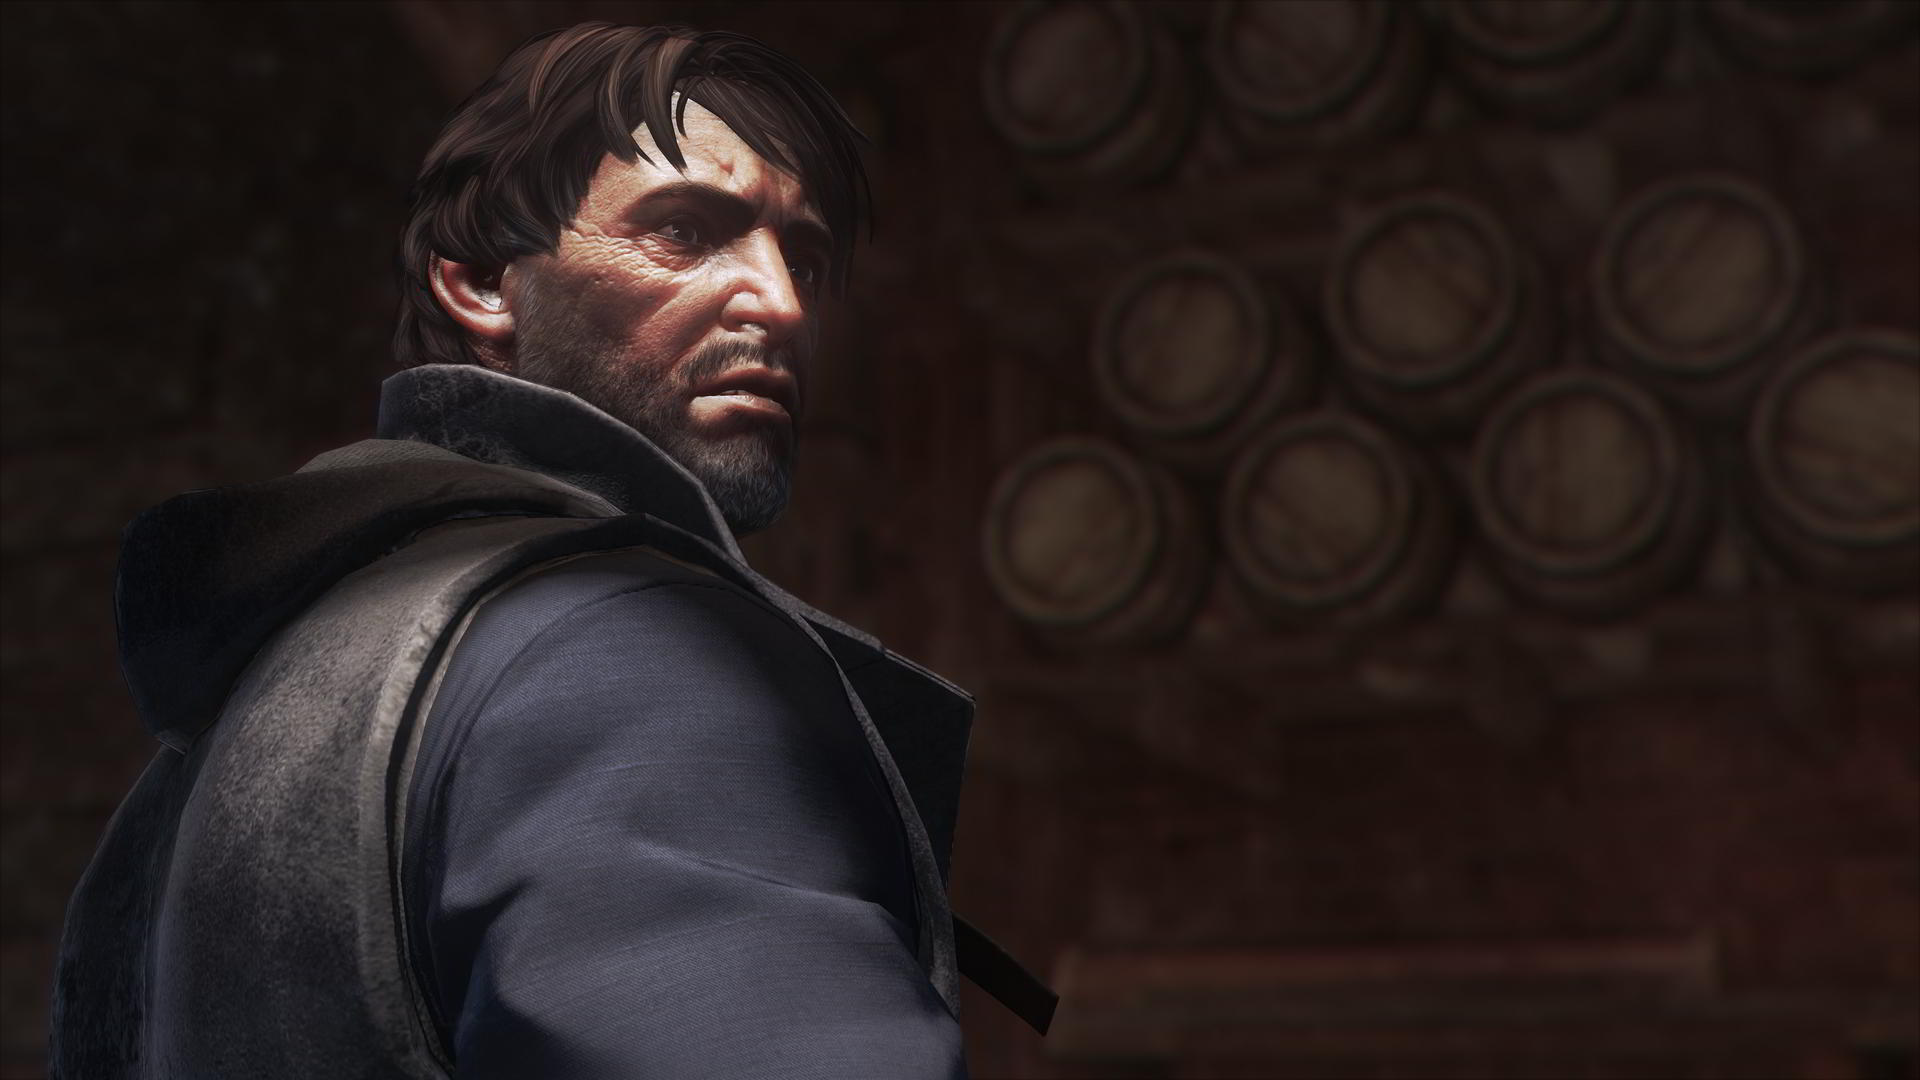 Immagine pubblicata in relazione al seguente contenuto: Bethesda pubblica nuovi screenshots e gameplay trailer Dishonored 2 | Nome immagine: news24801_Dishonored-2-Screenshot_2.jpg